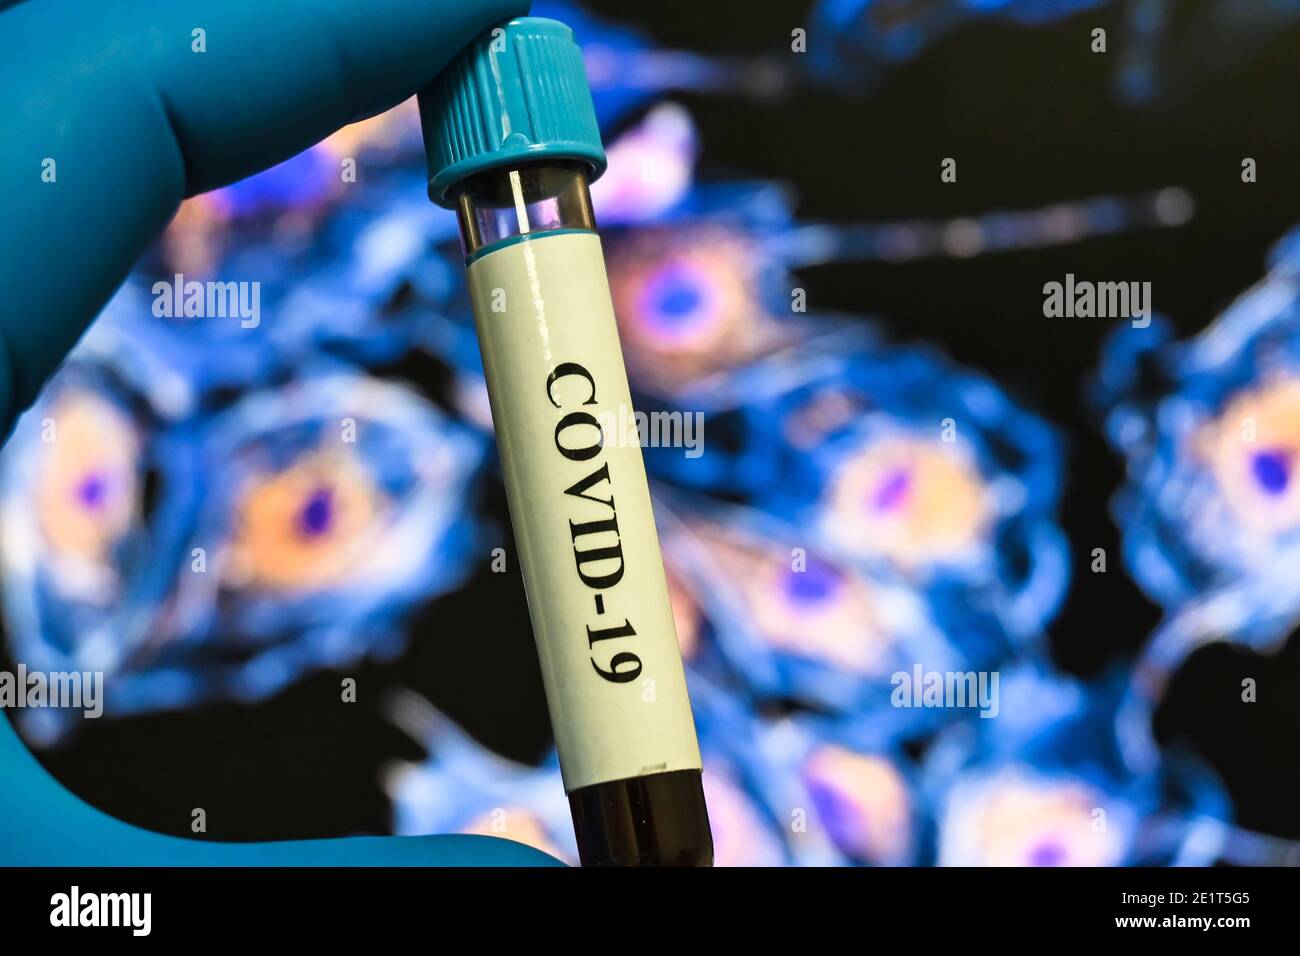 Prueba de coronavirus. Detección de anticuerpos para COVID-19 en una muestra de sangre. Foto de stock